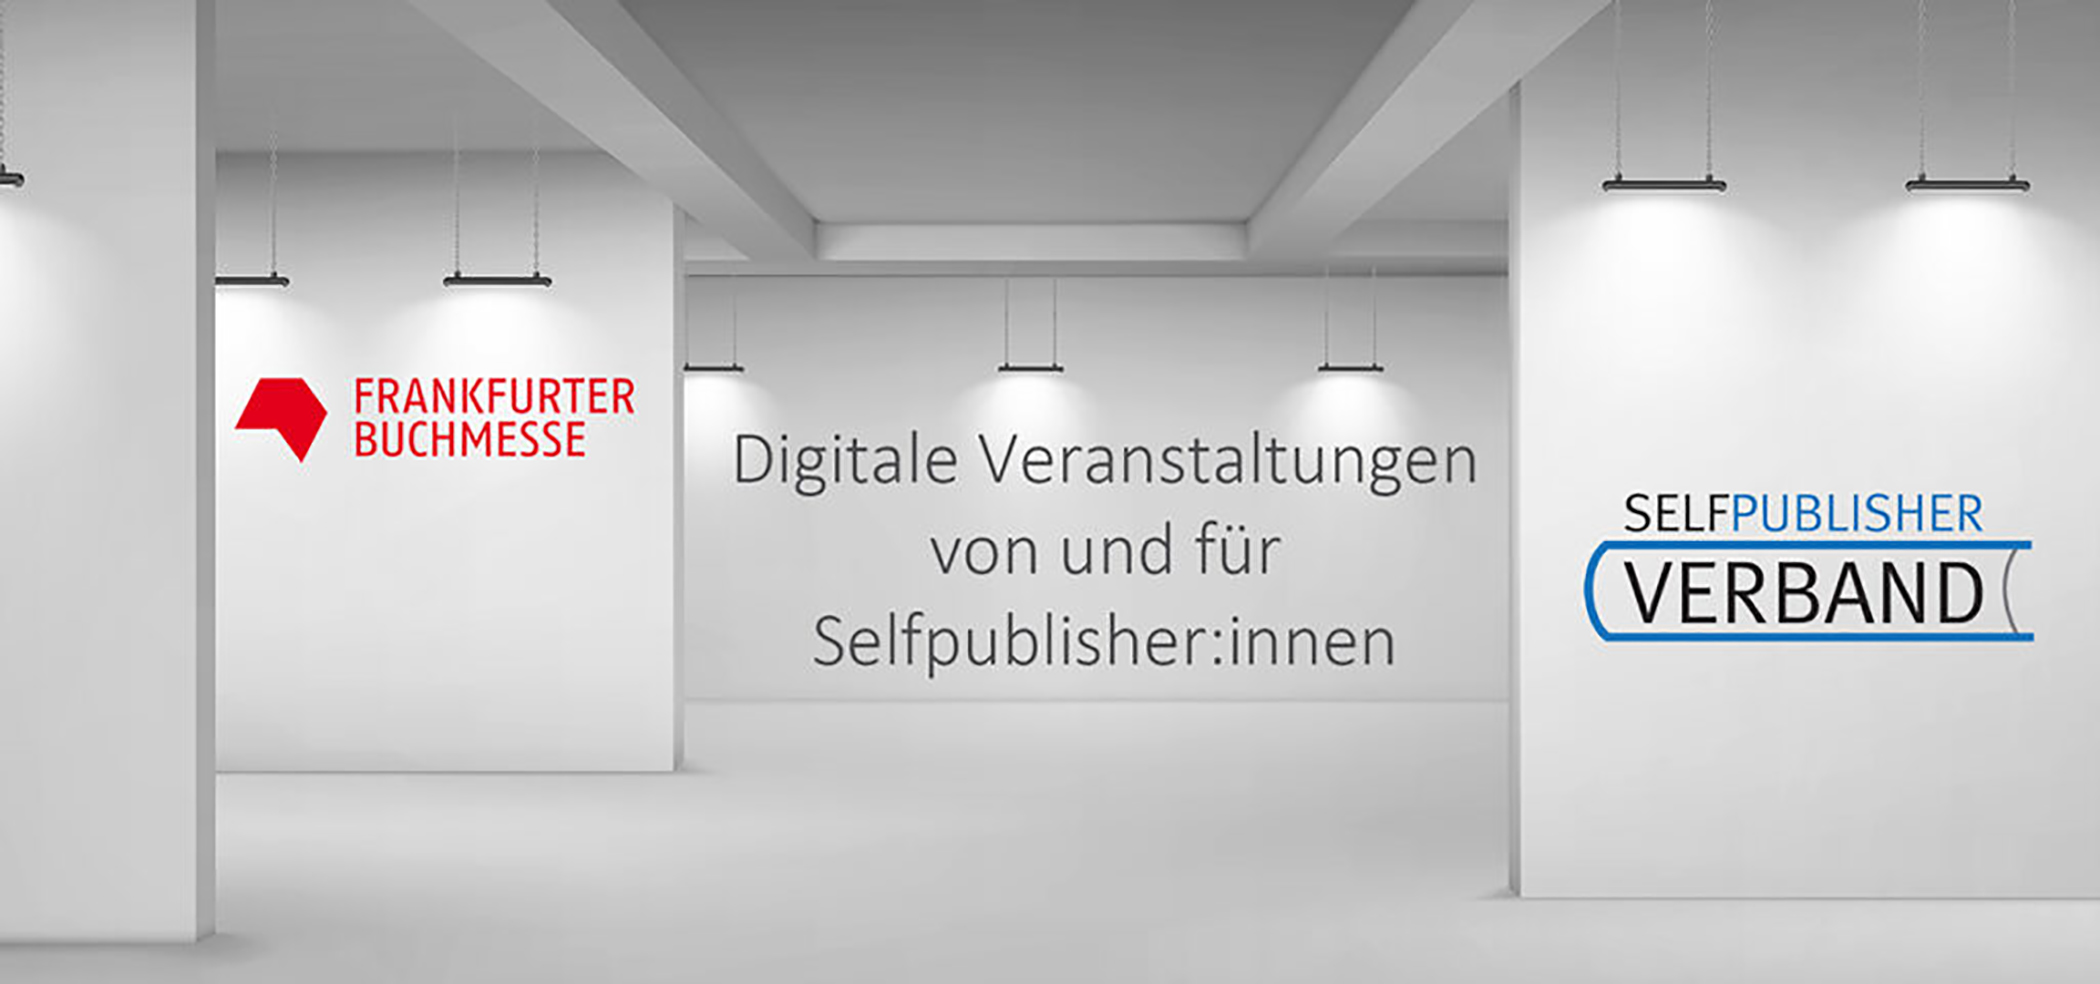 Veranstaltungen zur Frankfurter Buchmesse 2021